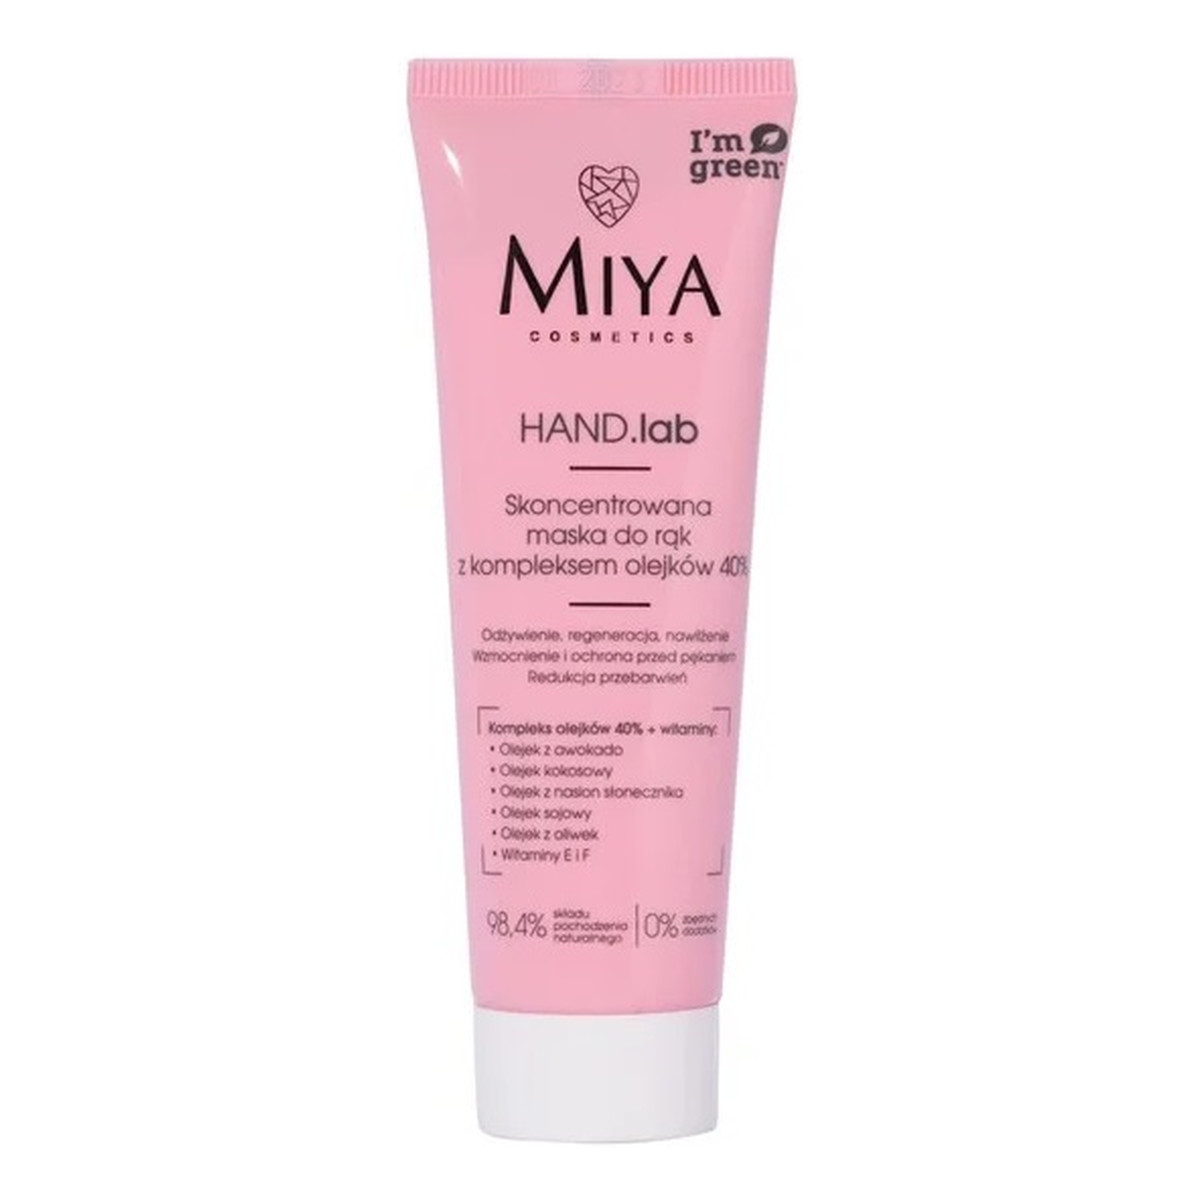 Miya Cosmetics Hand Lab Skoncetrowana maska do rąk z kompleksem olejków 40% 50ml